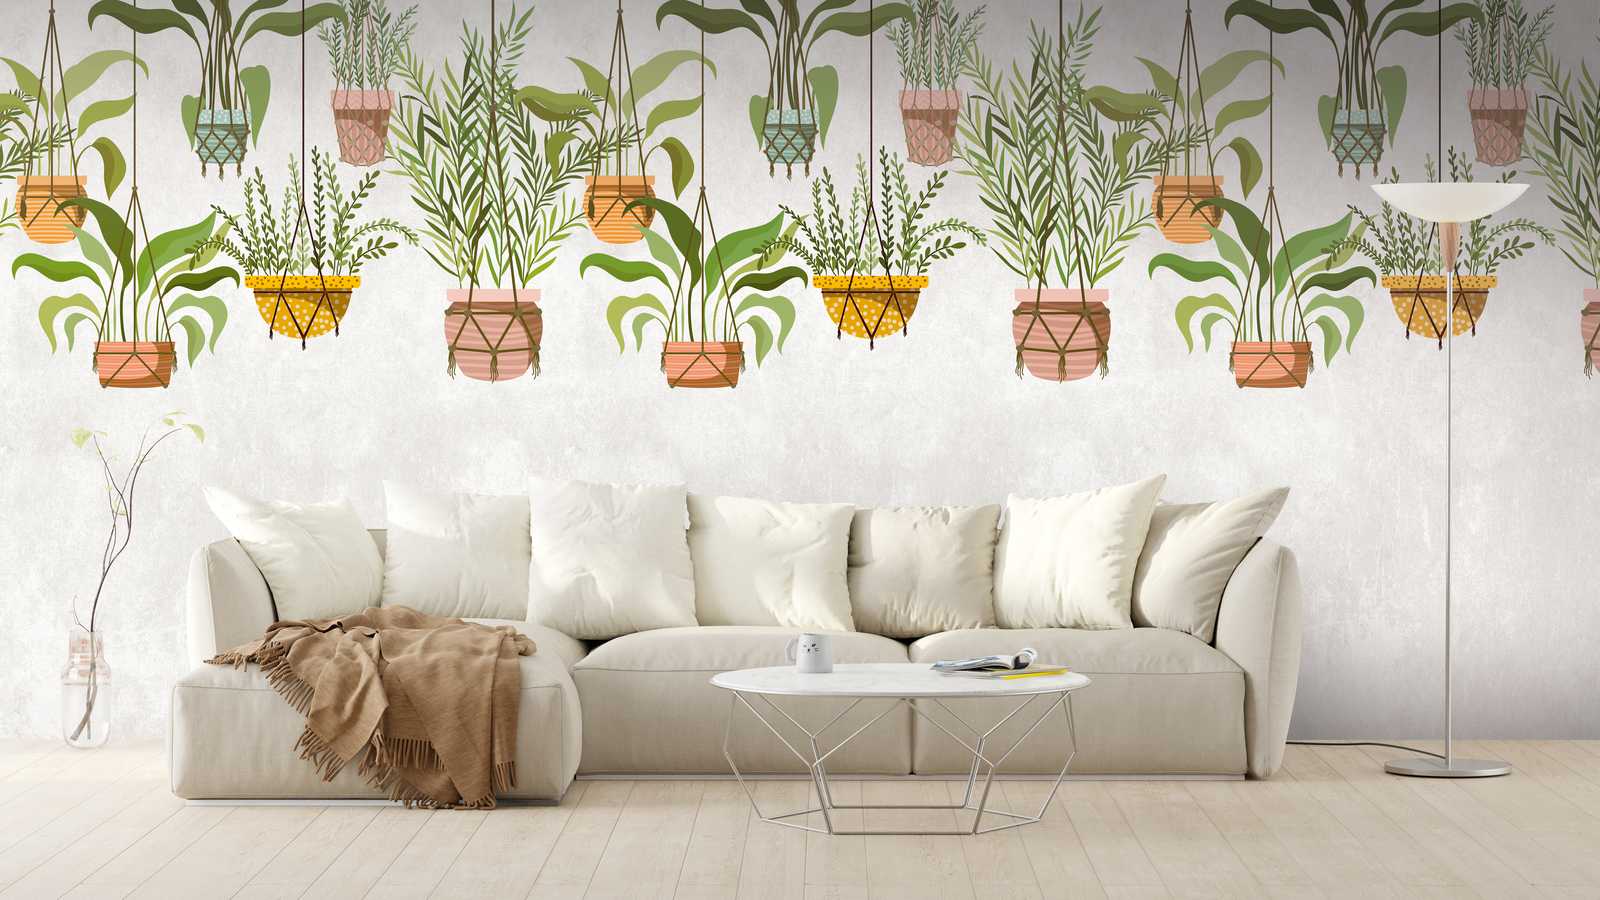             papier peint nouveauté | papier peint à motifs plantes suspendues décor botanique
        